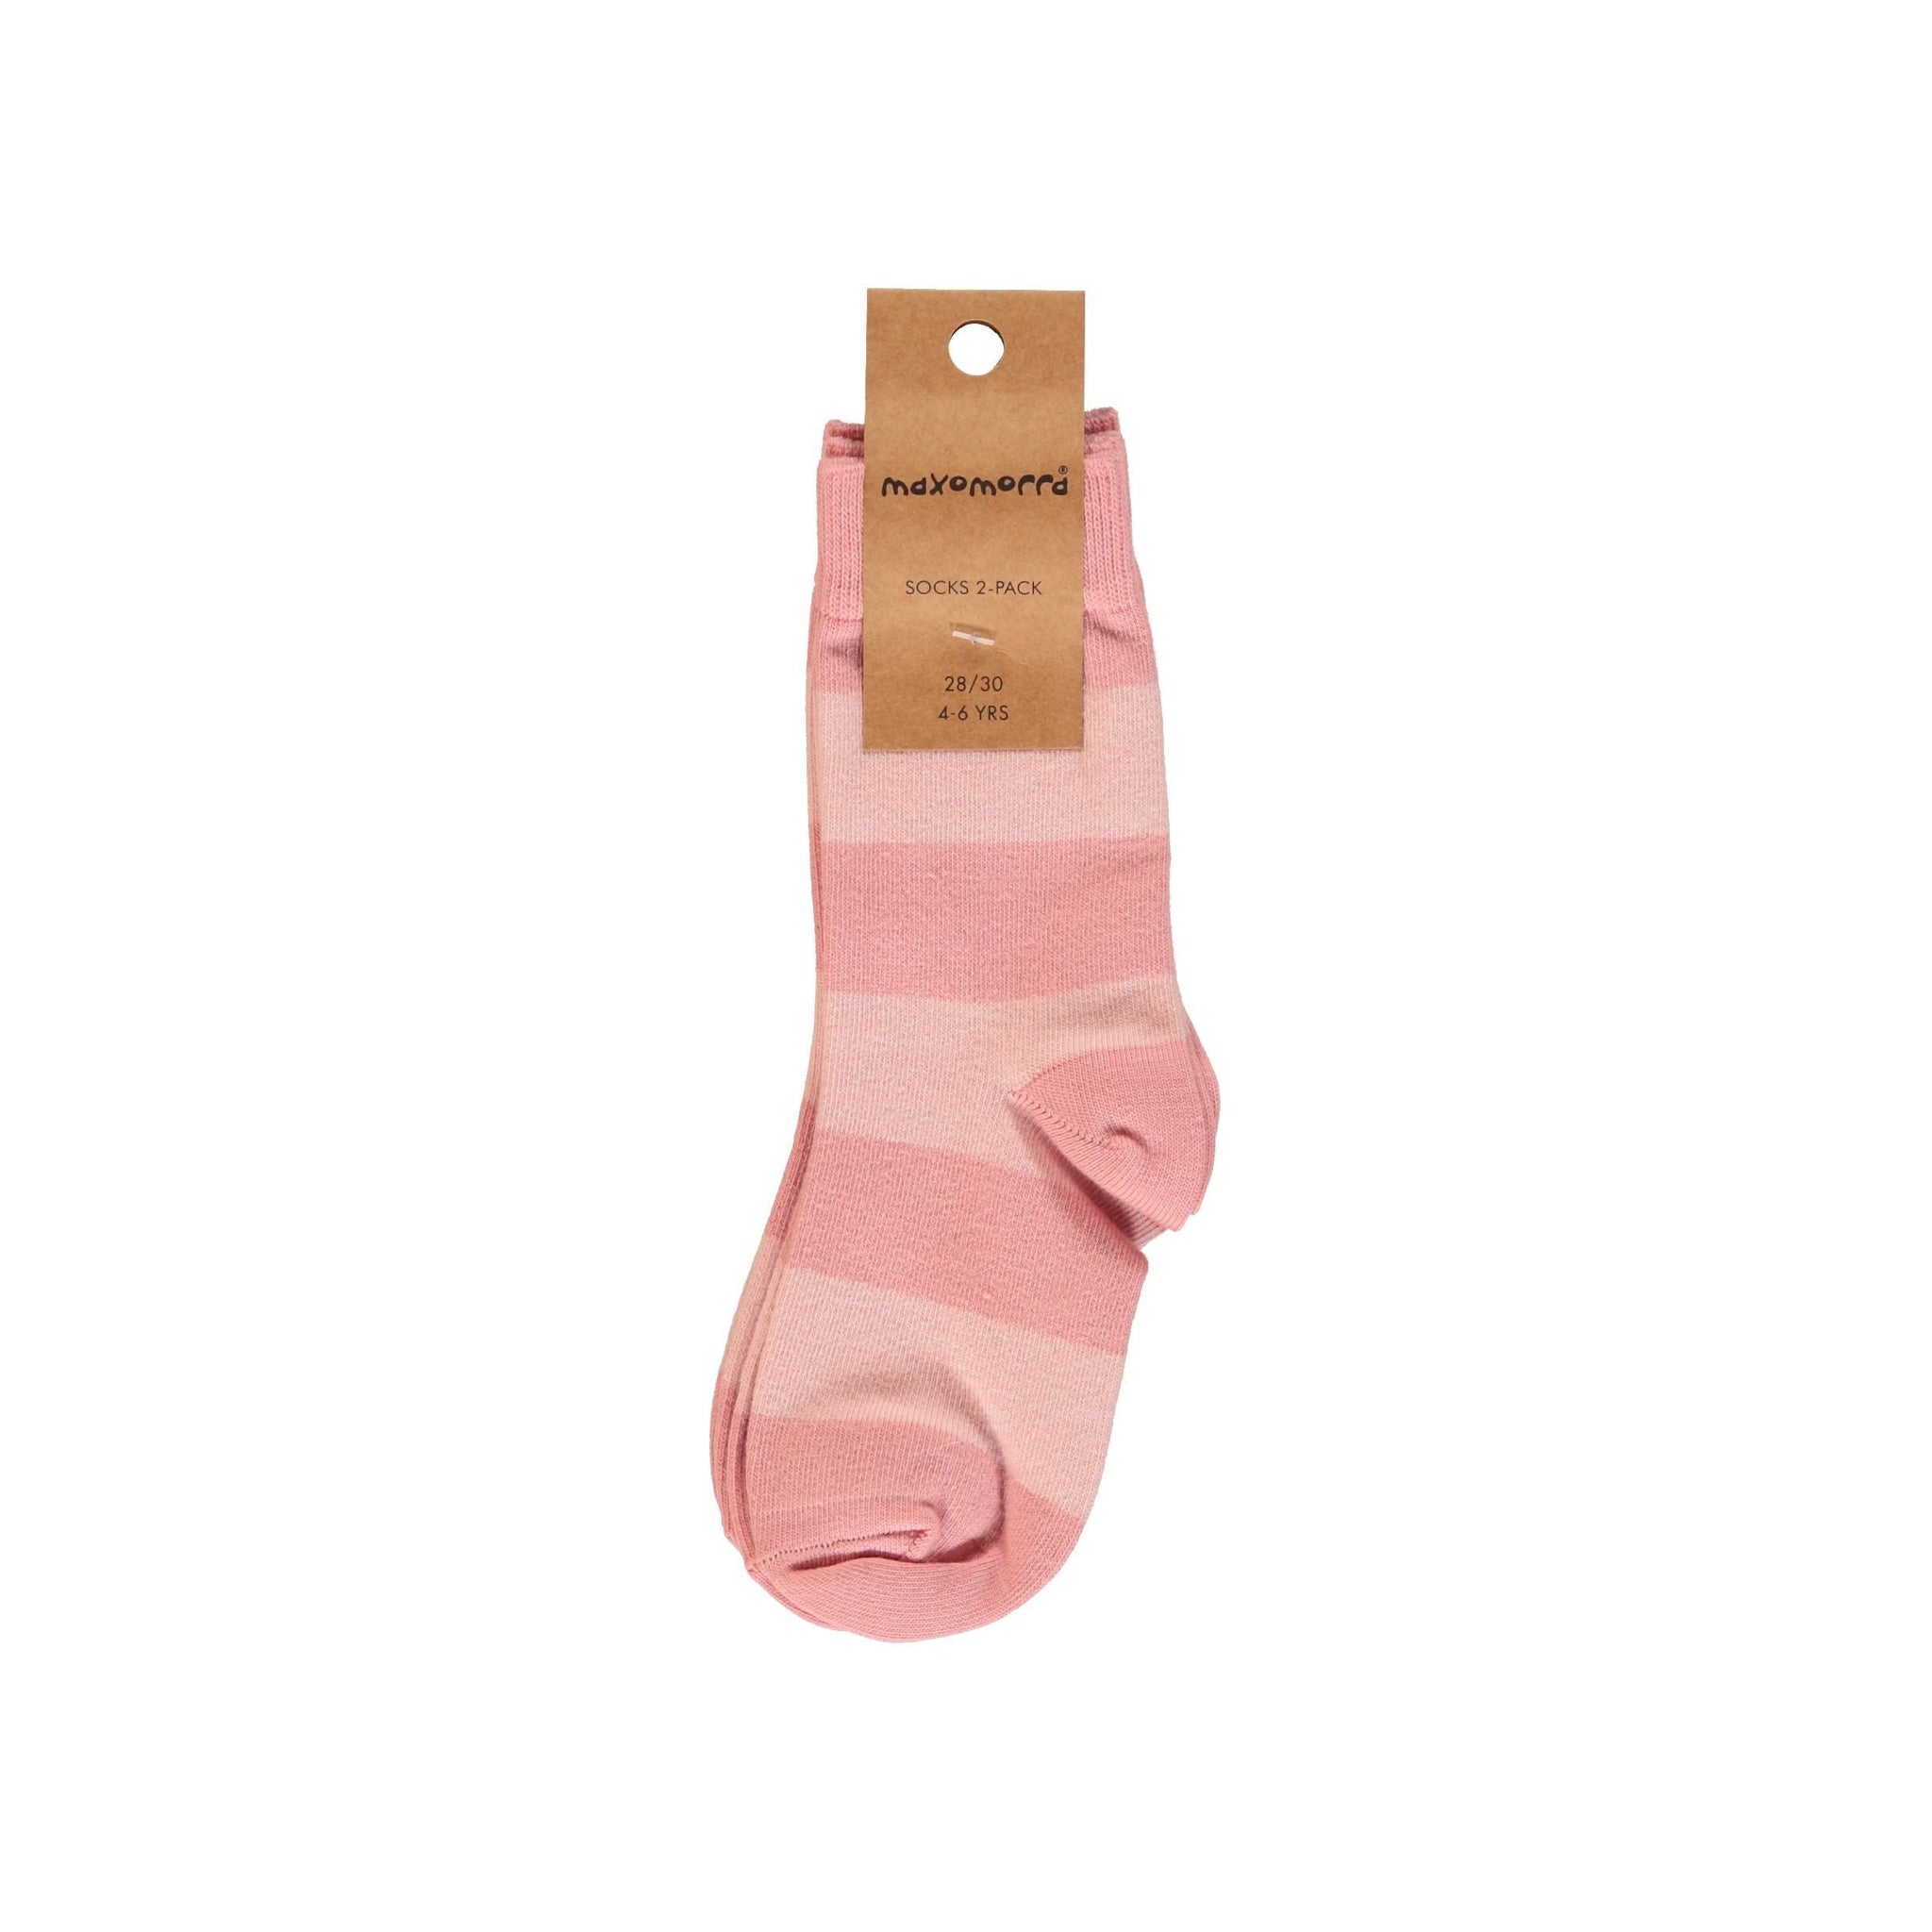 Maxomorra - Stripe - Dusty Rose Socks (2 Pack) (6-12 Months)